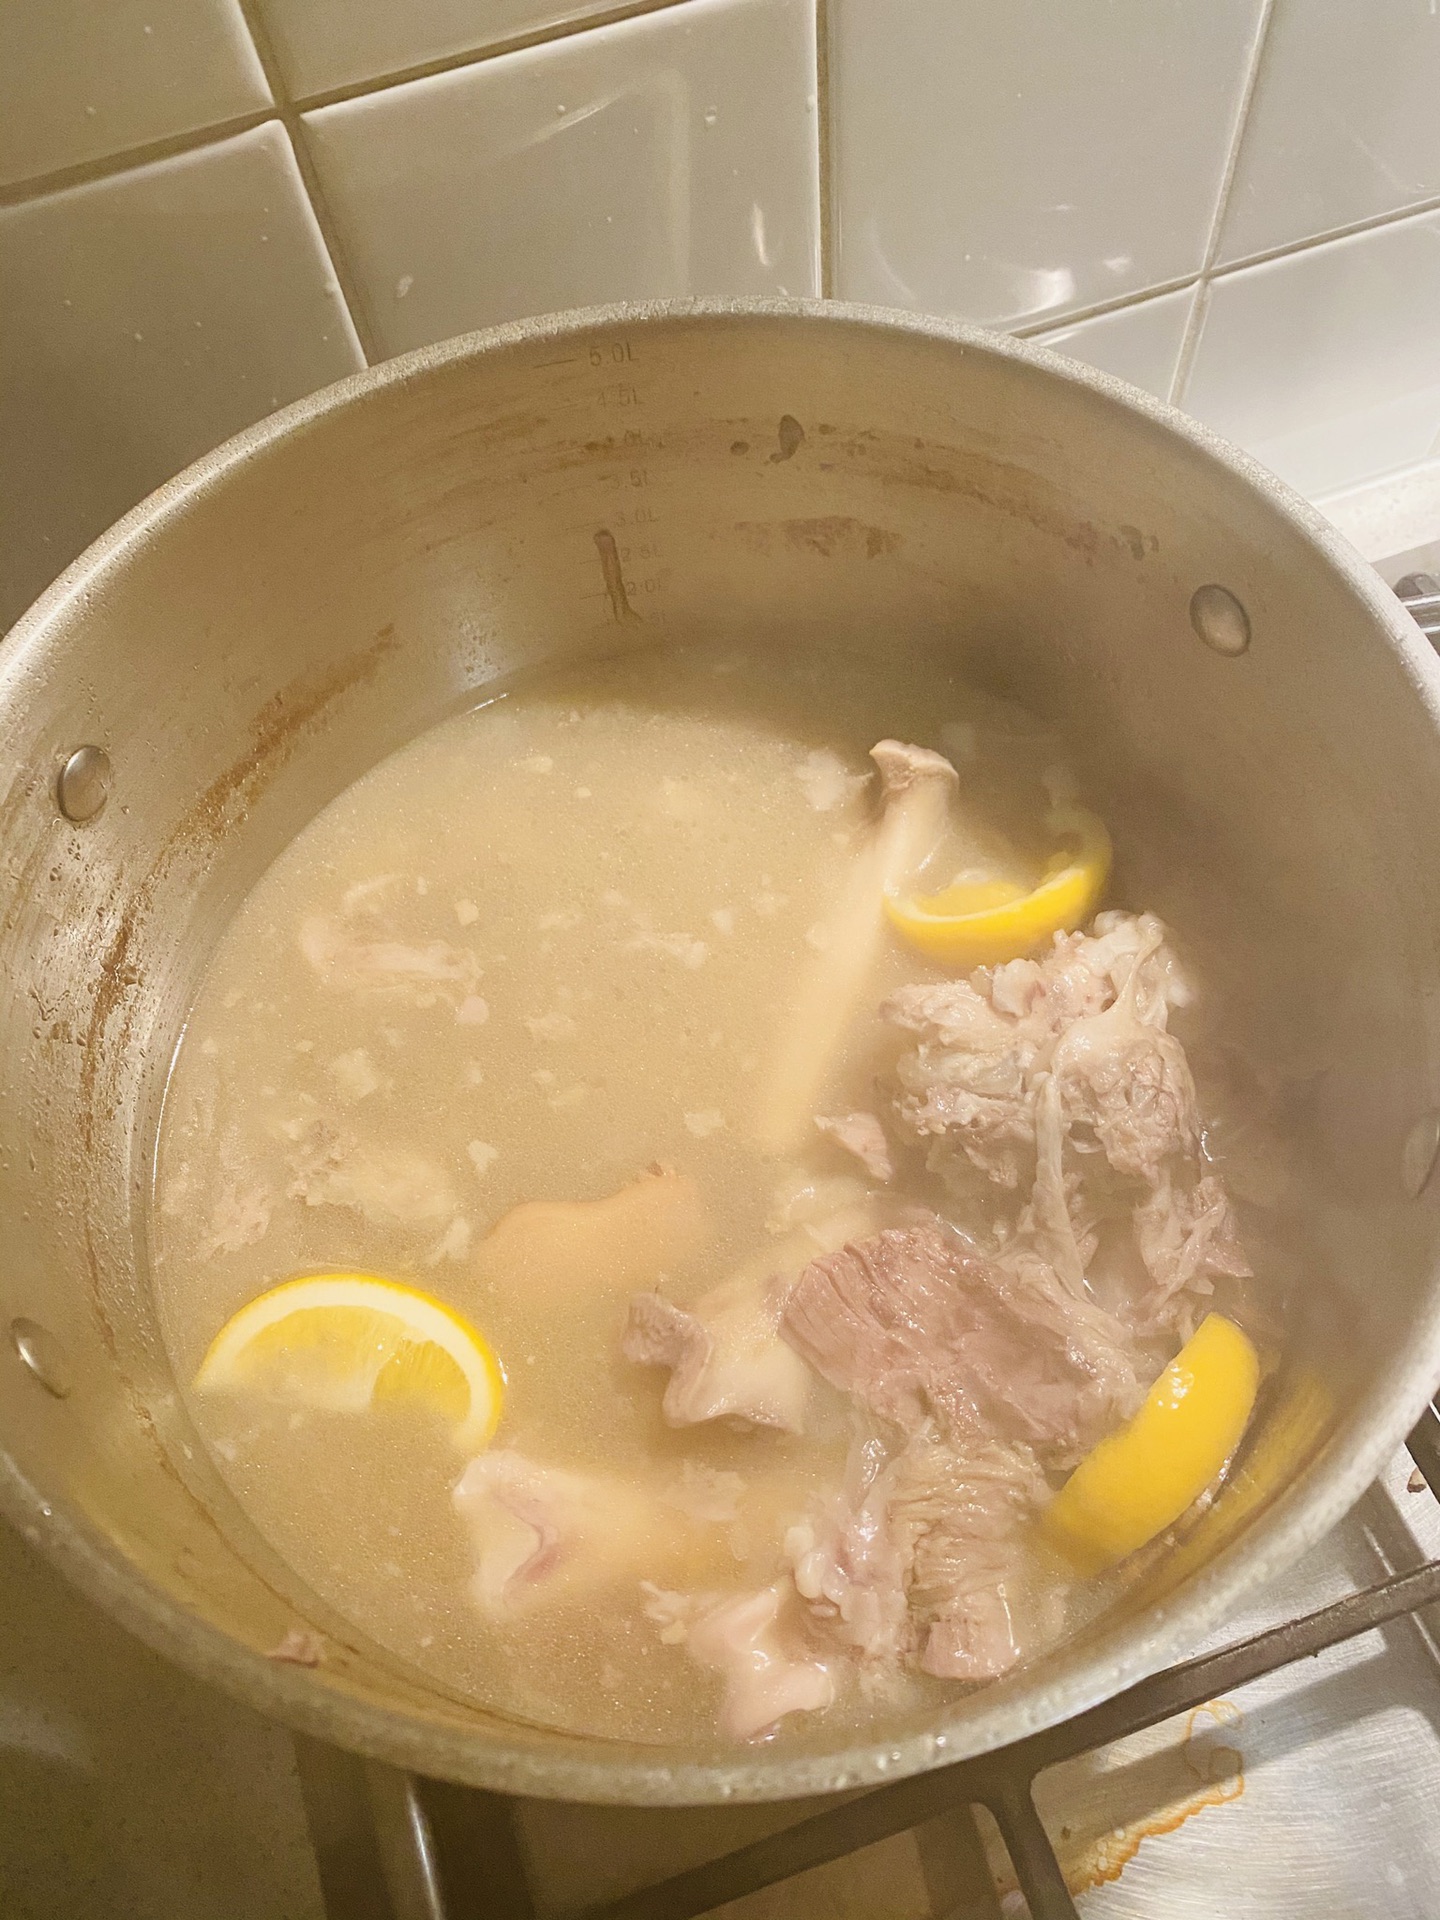 一锅白白浓稠的羊肉汤如何熬制